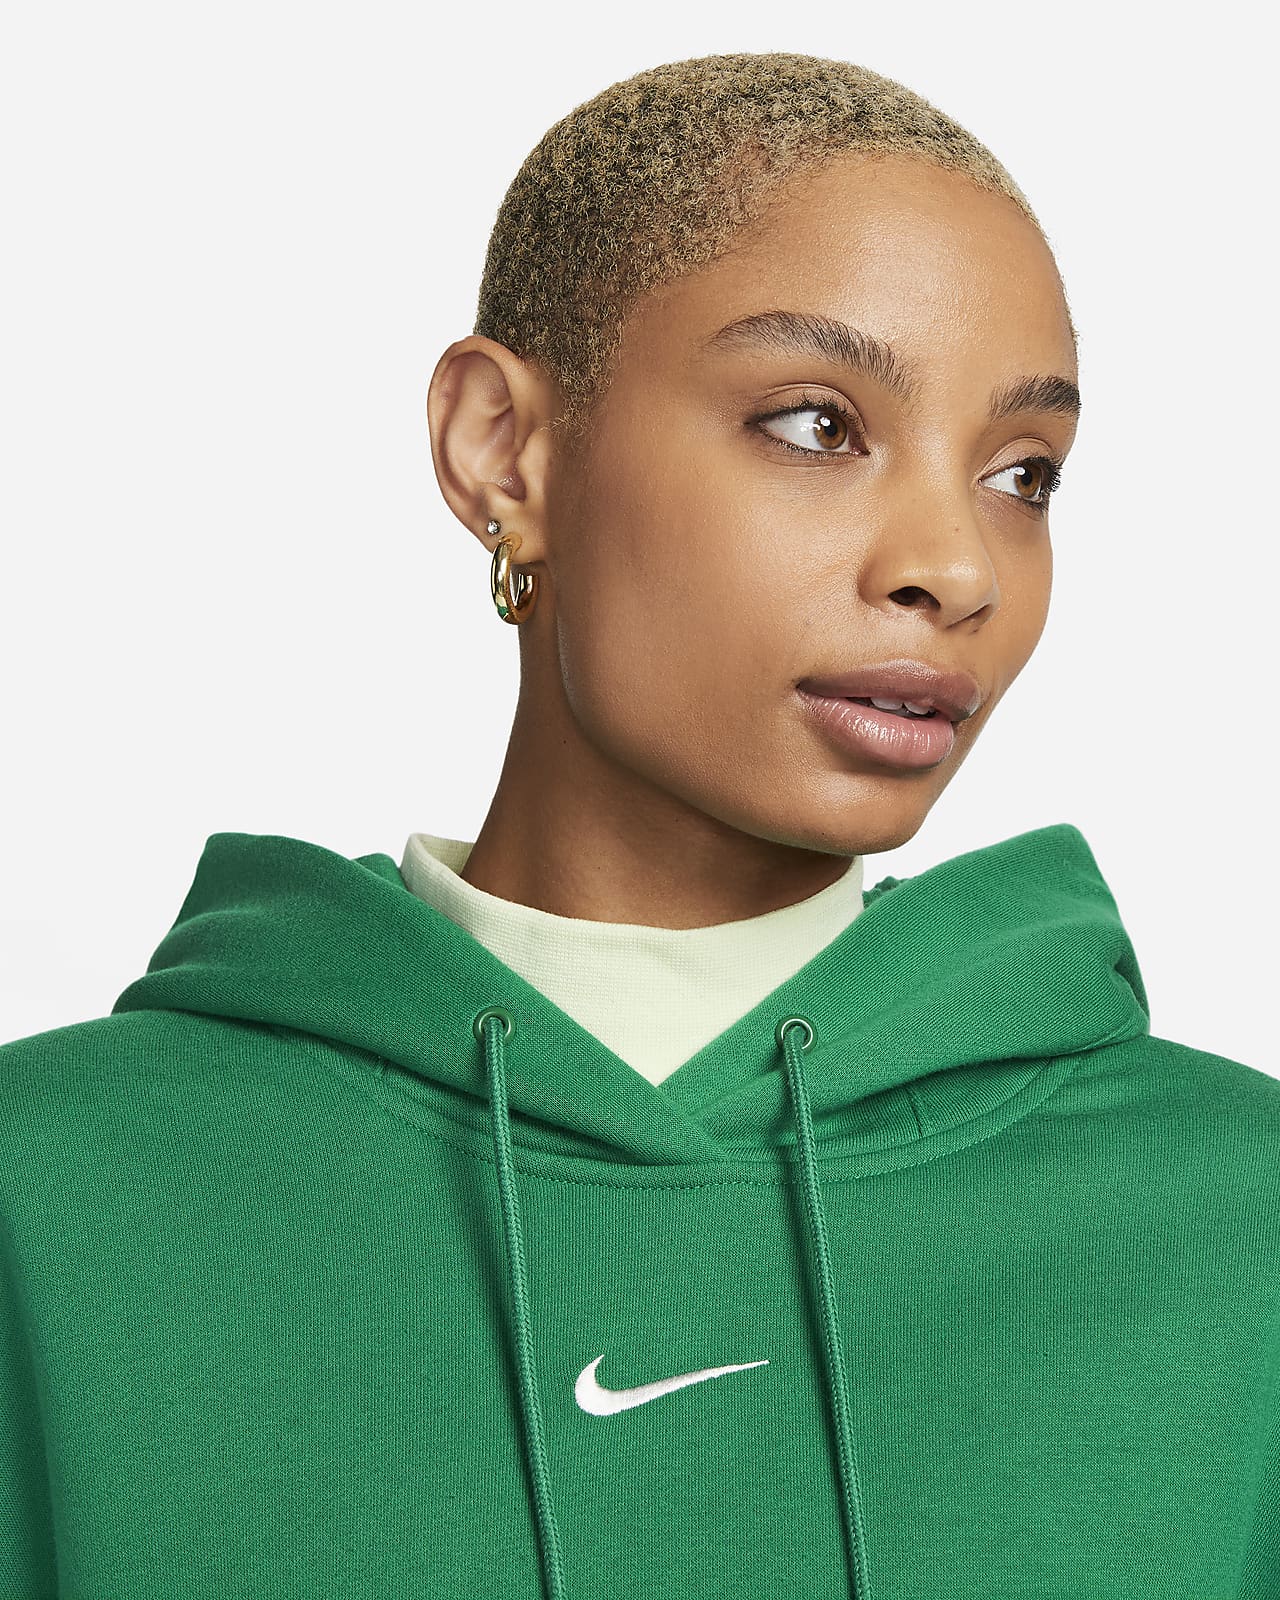 Nike Sportswear Phoenix Fleece Women's Over-Oversized Pullover Hoodie.